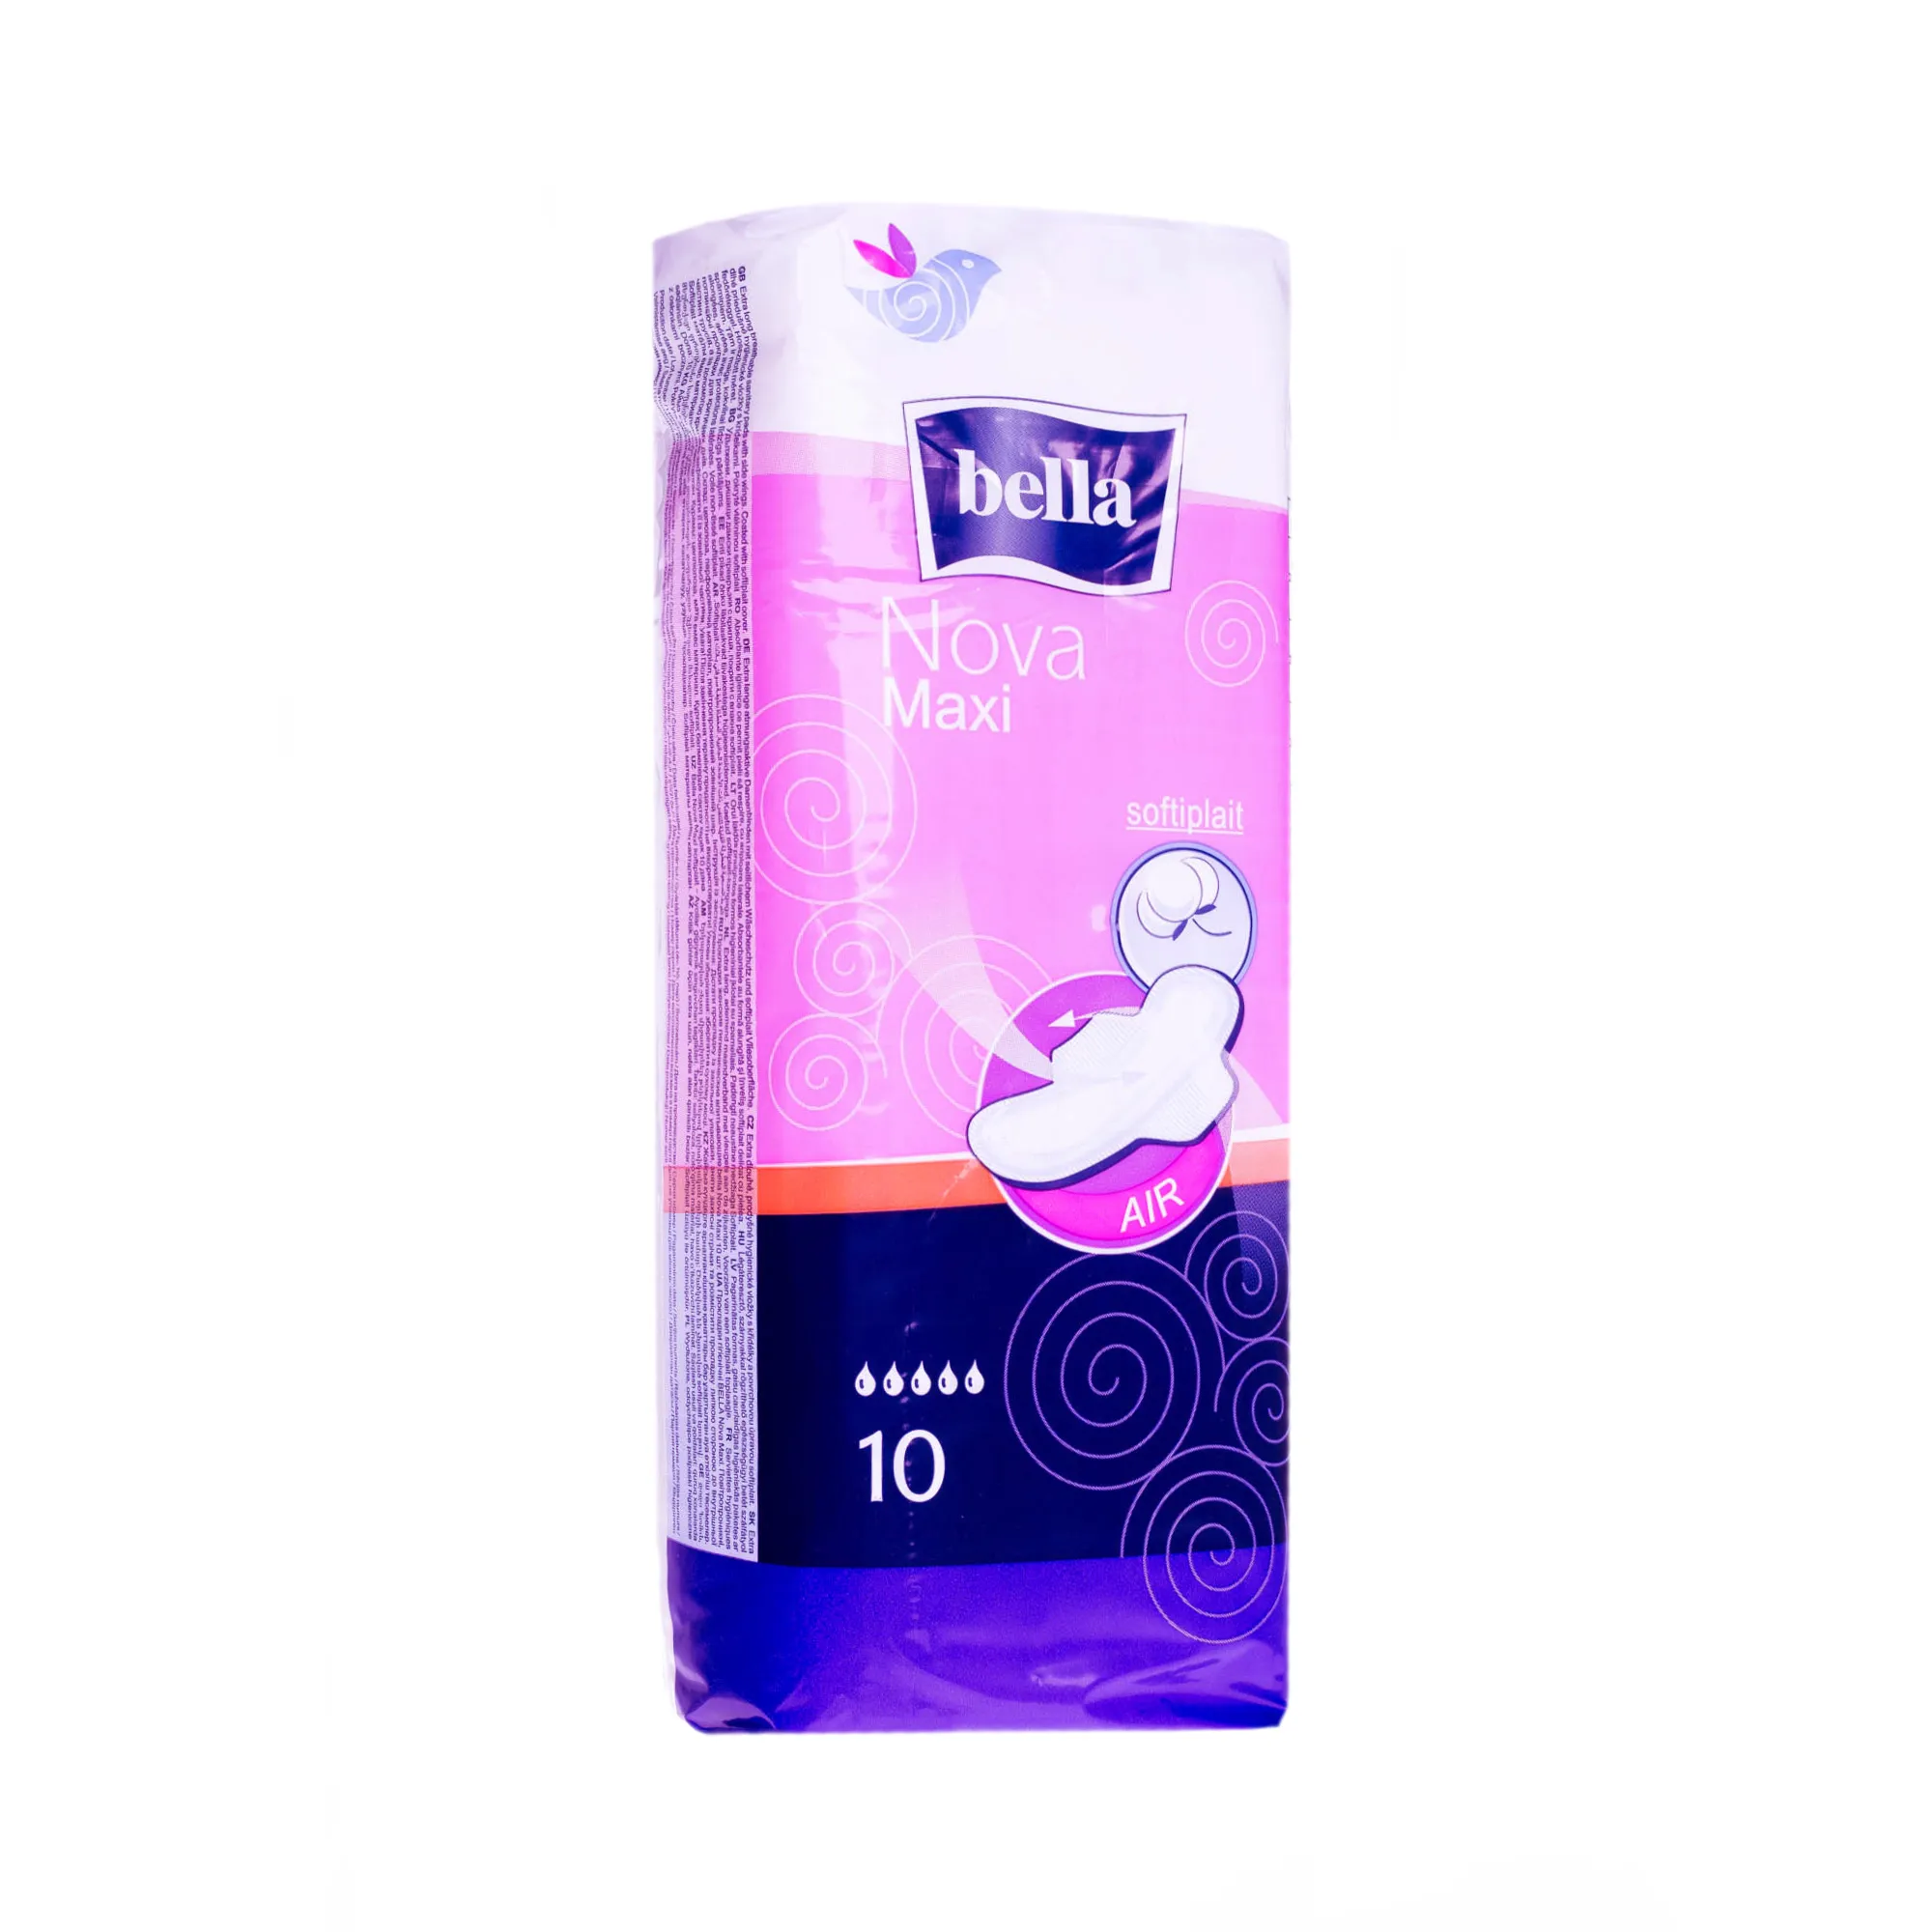 Bella Nova Maxi, podpaski higieniczne, 10 sztuk